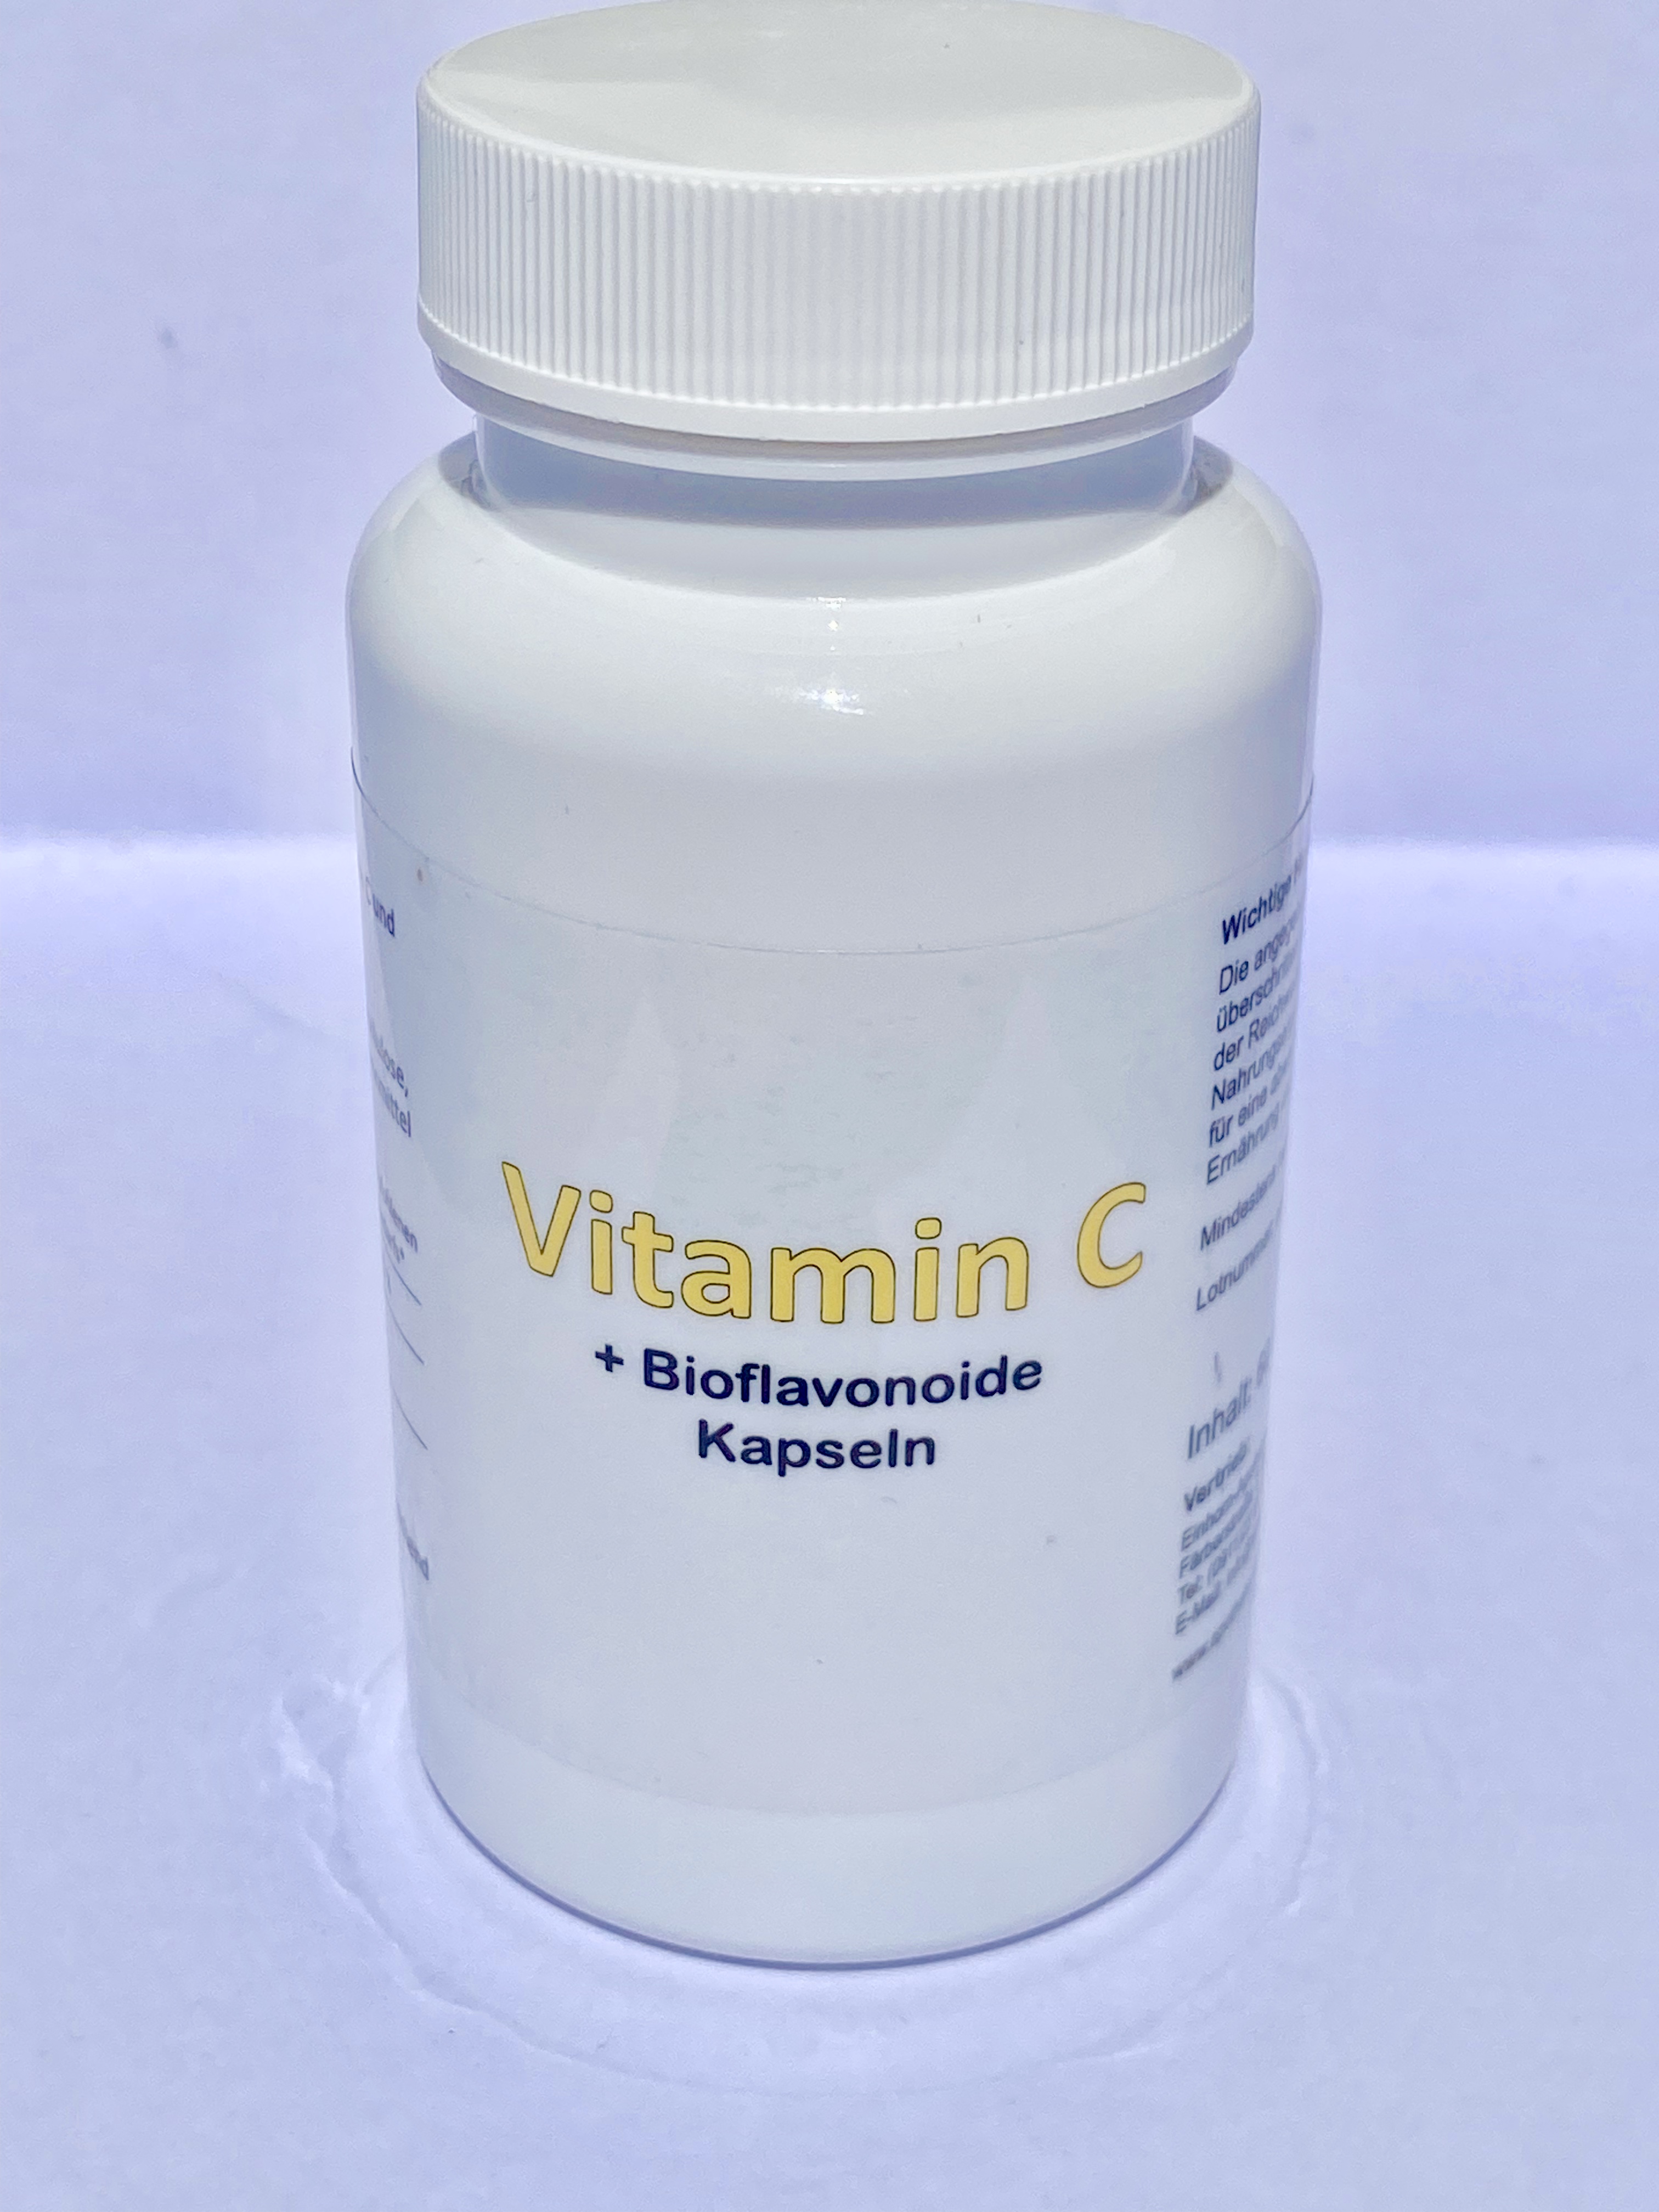 Vitamin C + Bioflavonoide Kapseln